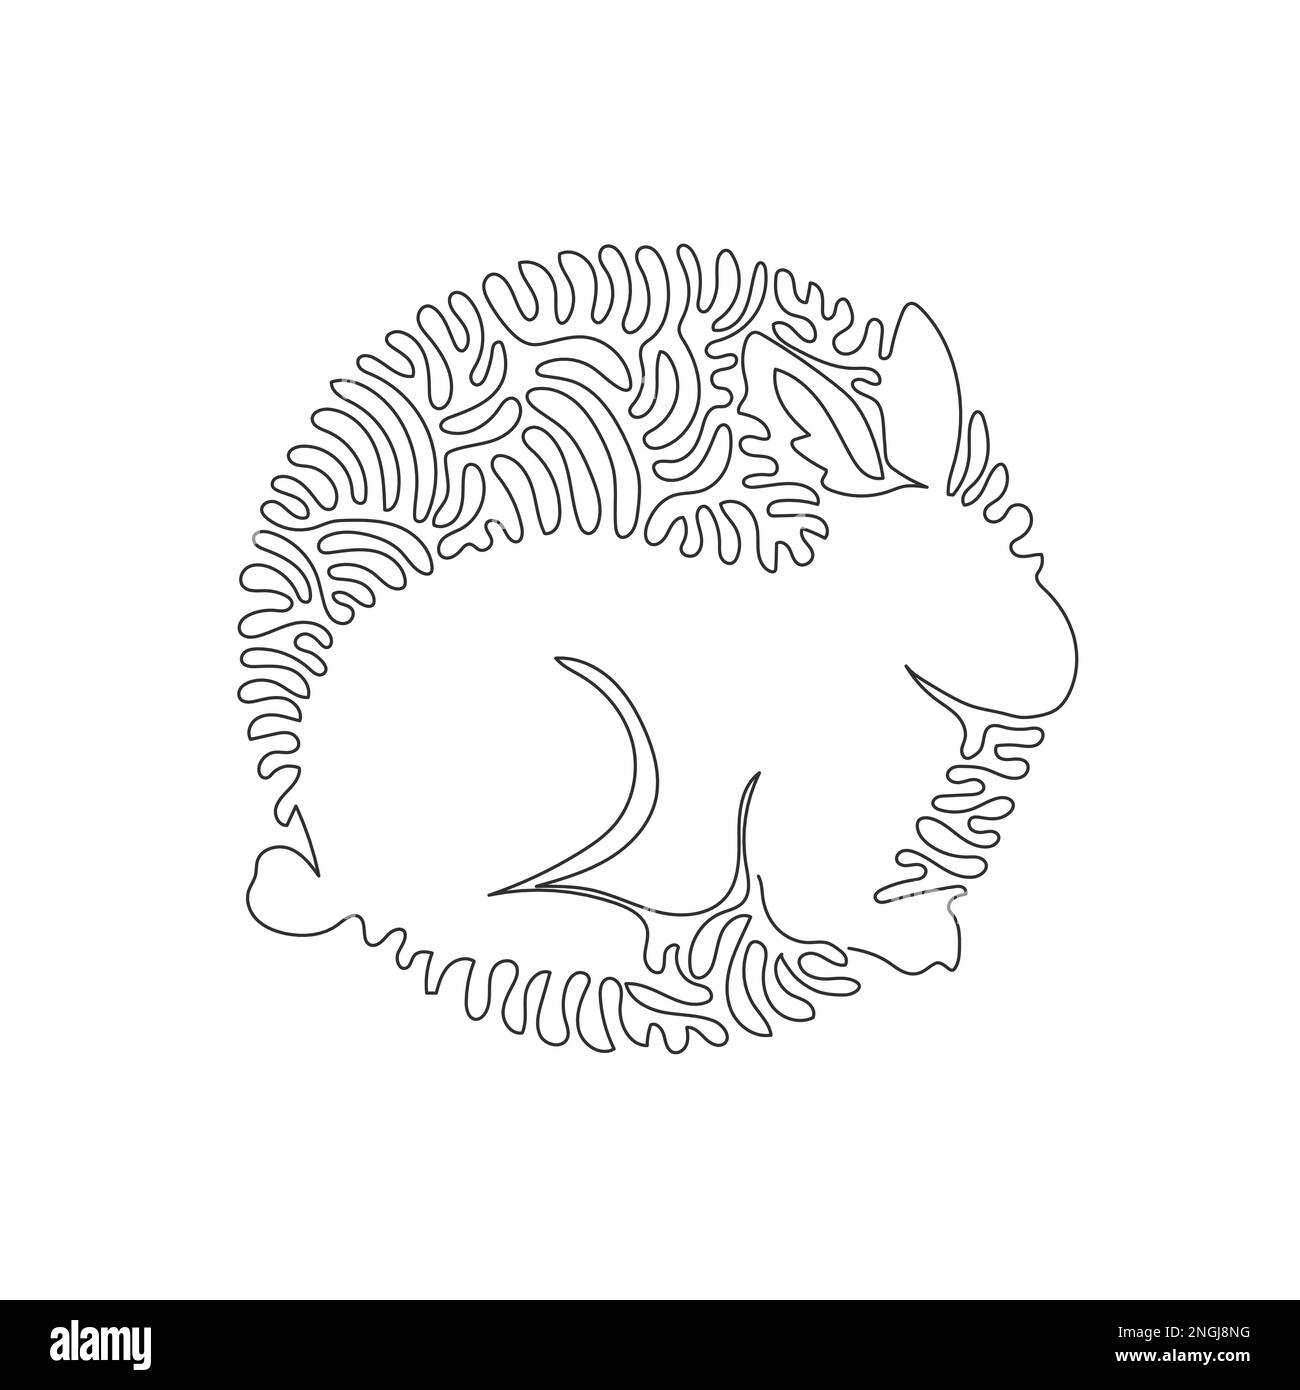 Dessin continu de lignes courbes de l'art abstrait drôle de lapin Illustration vectorielle d'un trait simple et modifiable de lapins ayant de longues oreilles Illustration de Vecteur